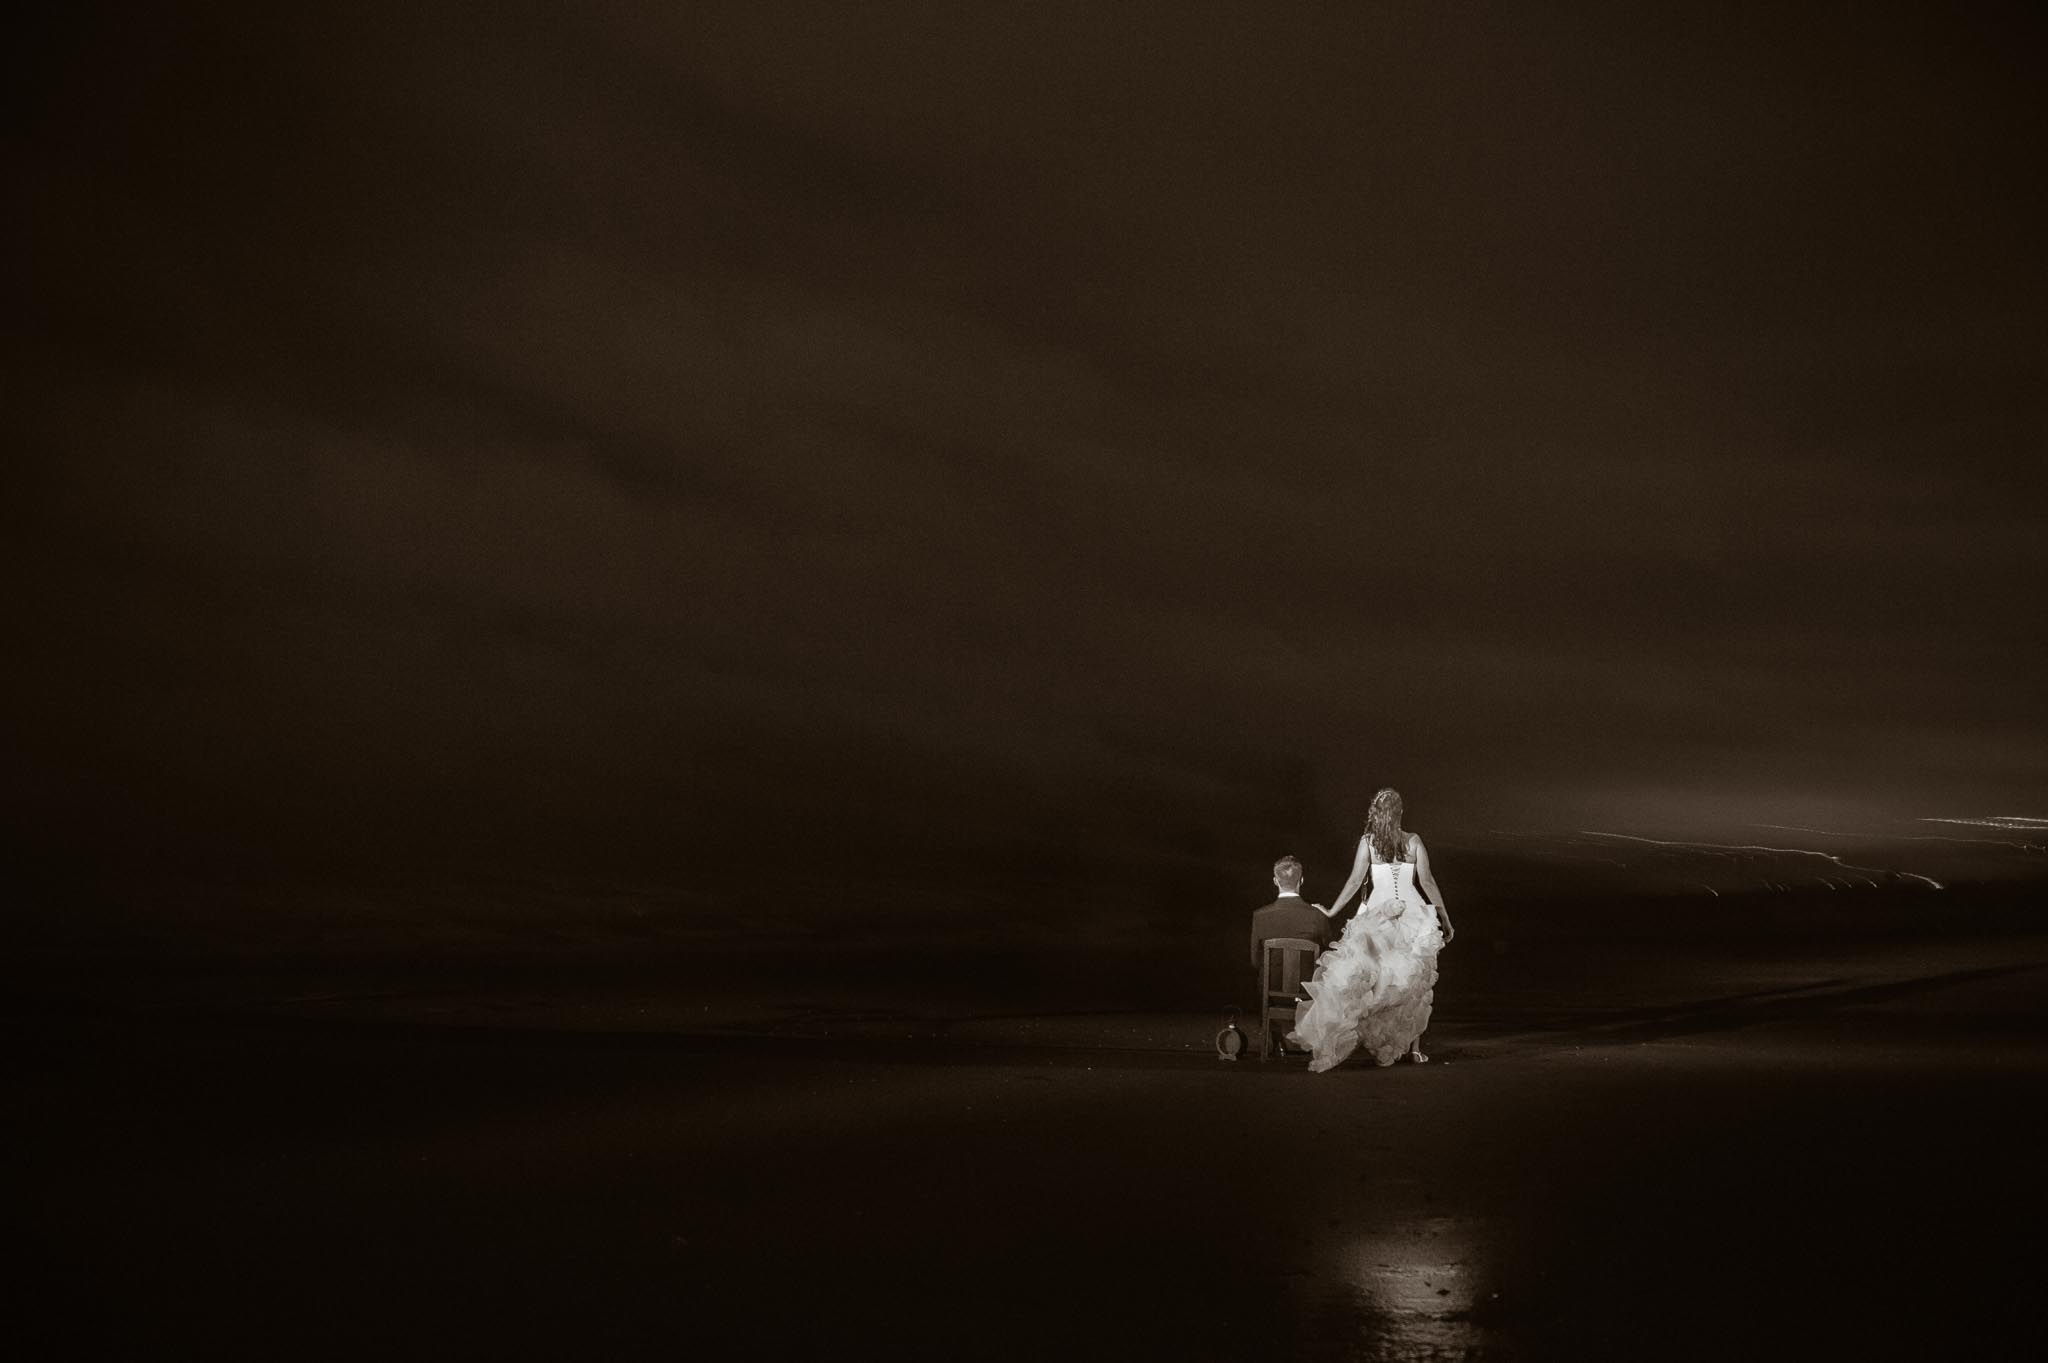 Séance couple après mariage fantastique & poétique inspirée Tim Burton près de Nantes par Geoffrey Arnoldy photographe